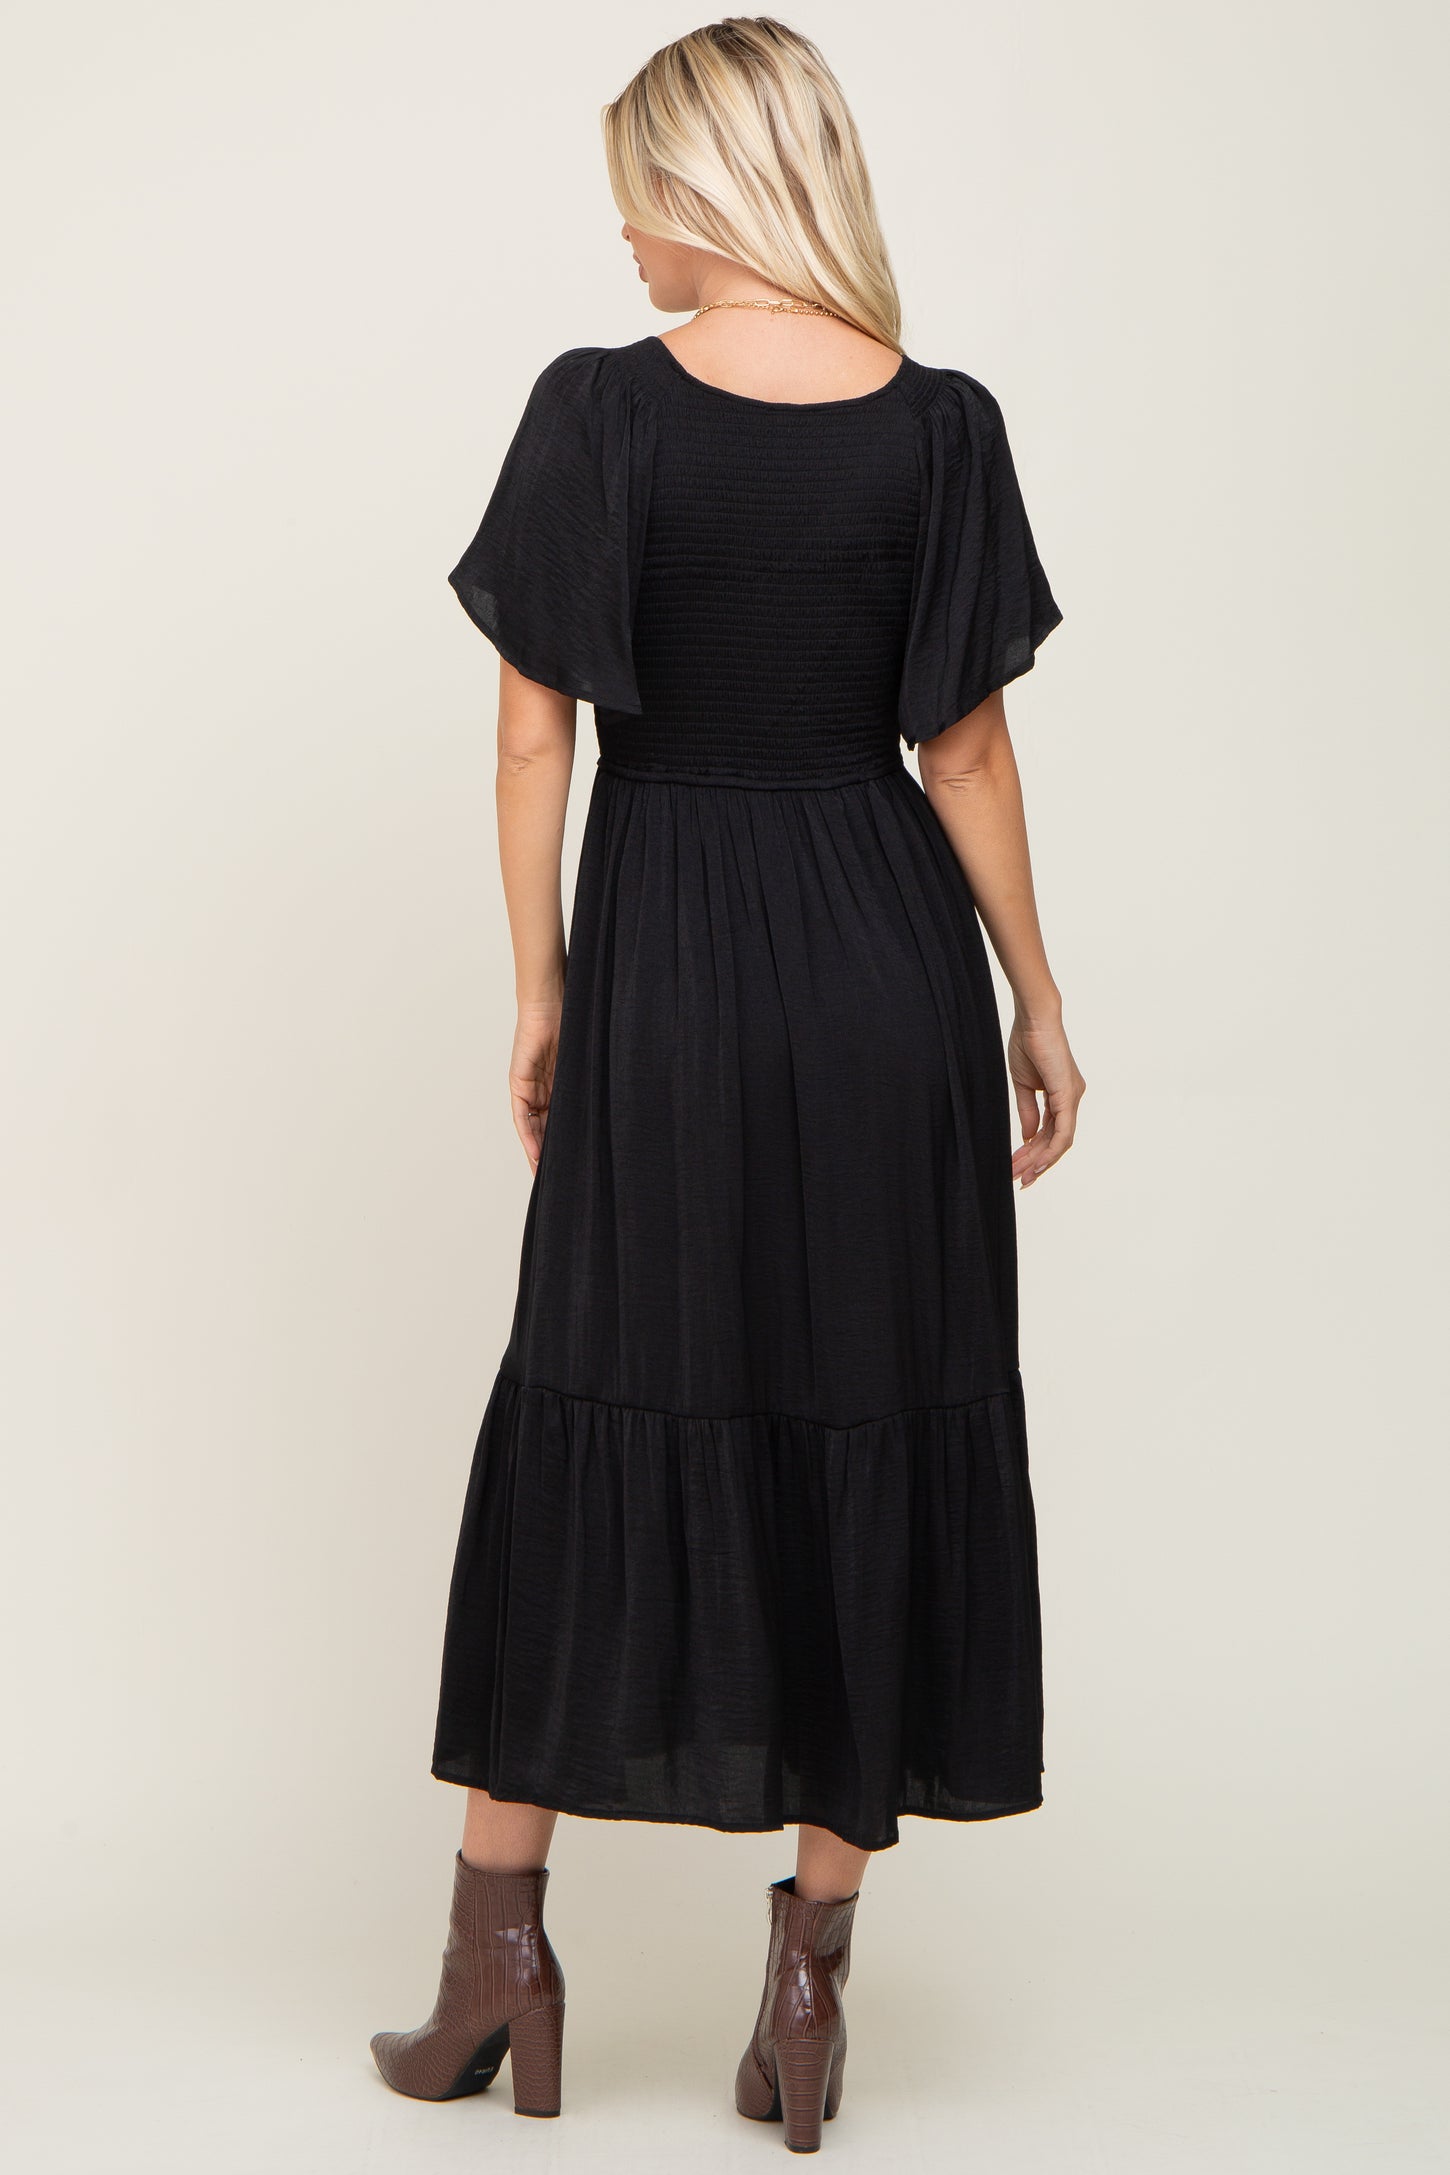 Black Satin Smocked Midi Dress